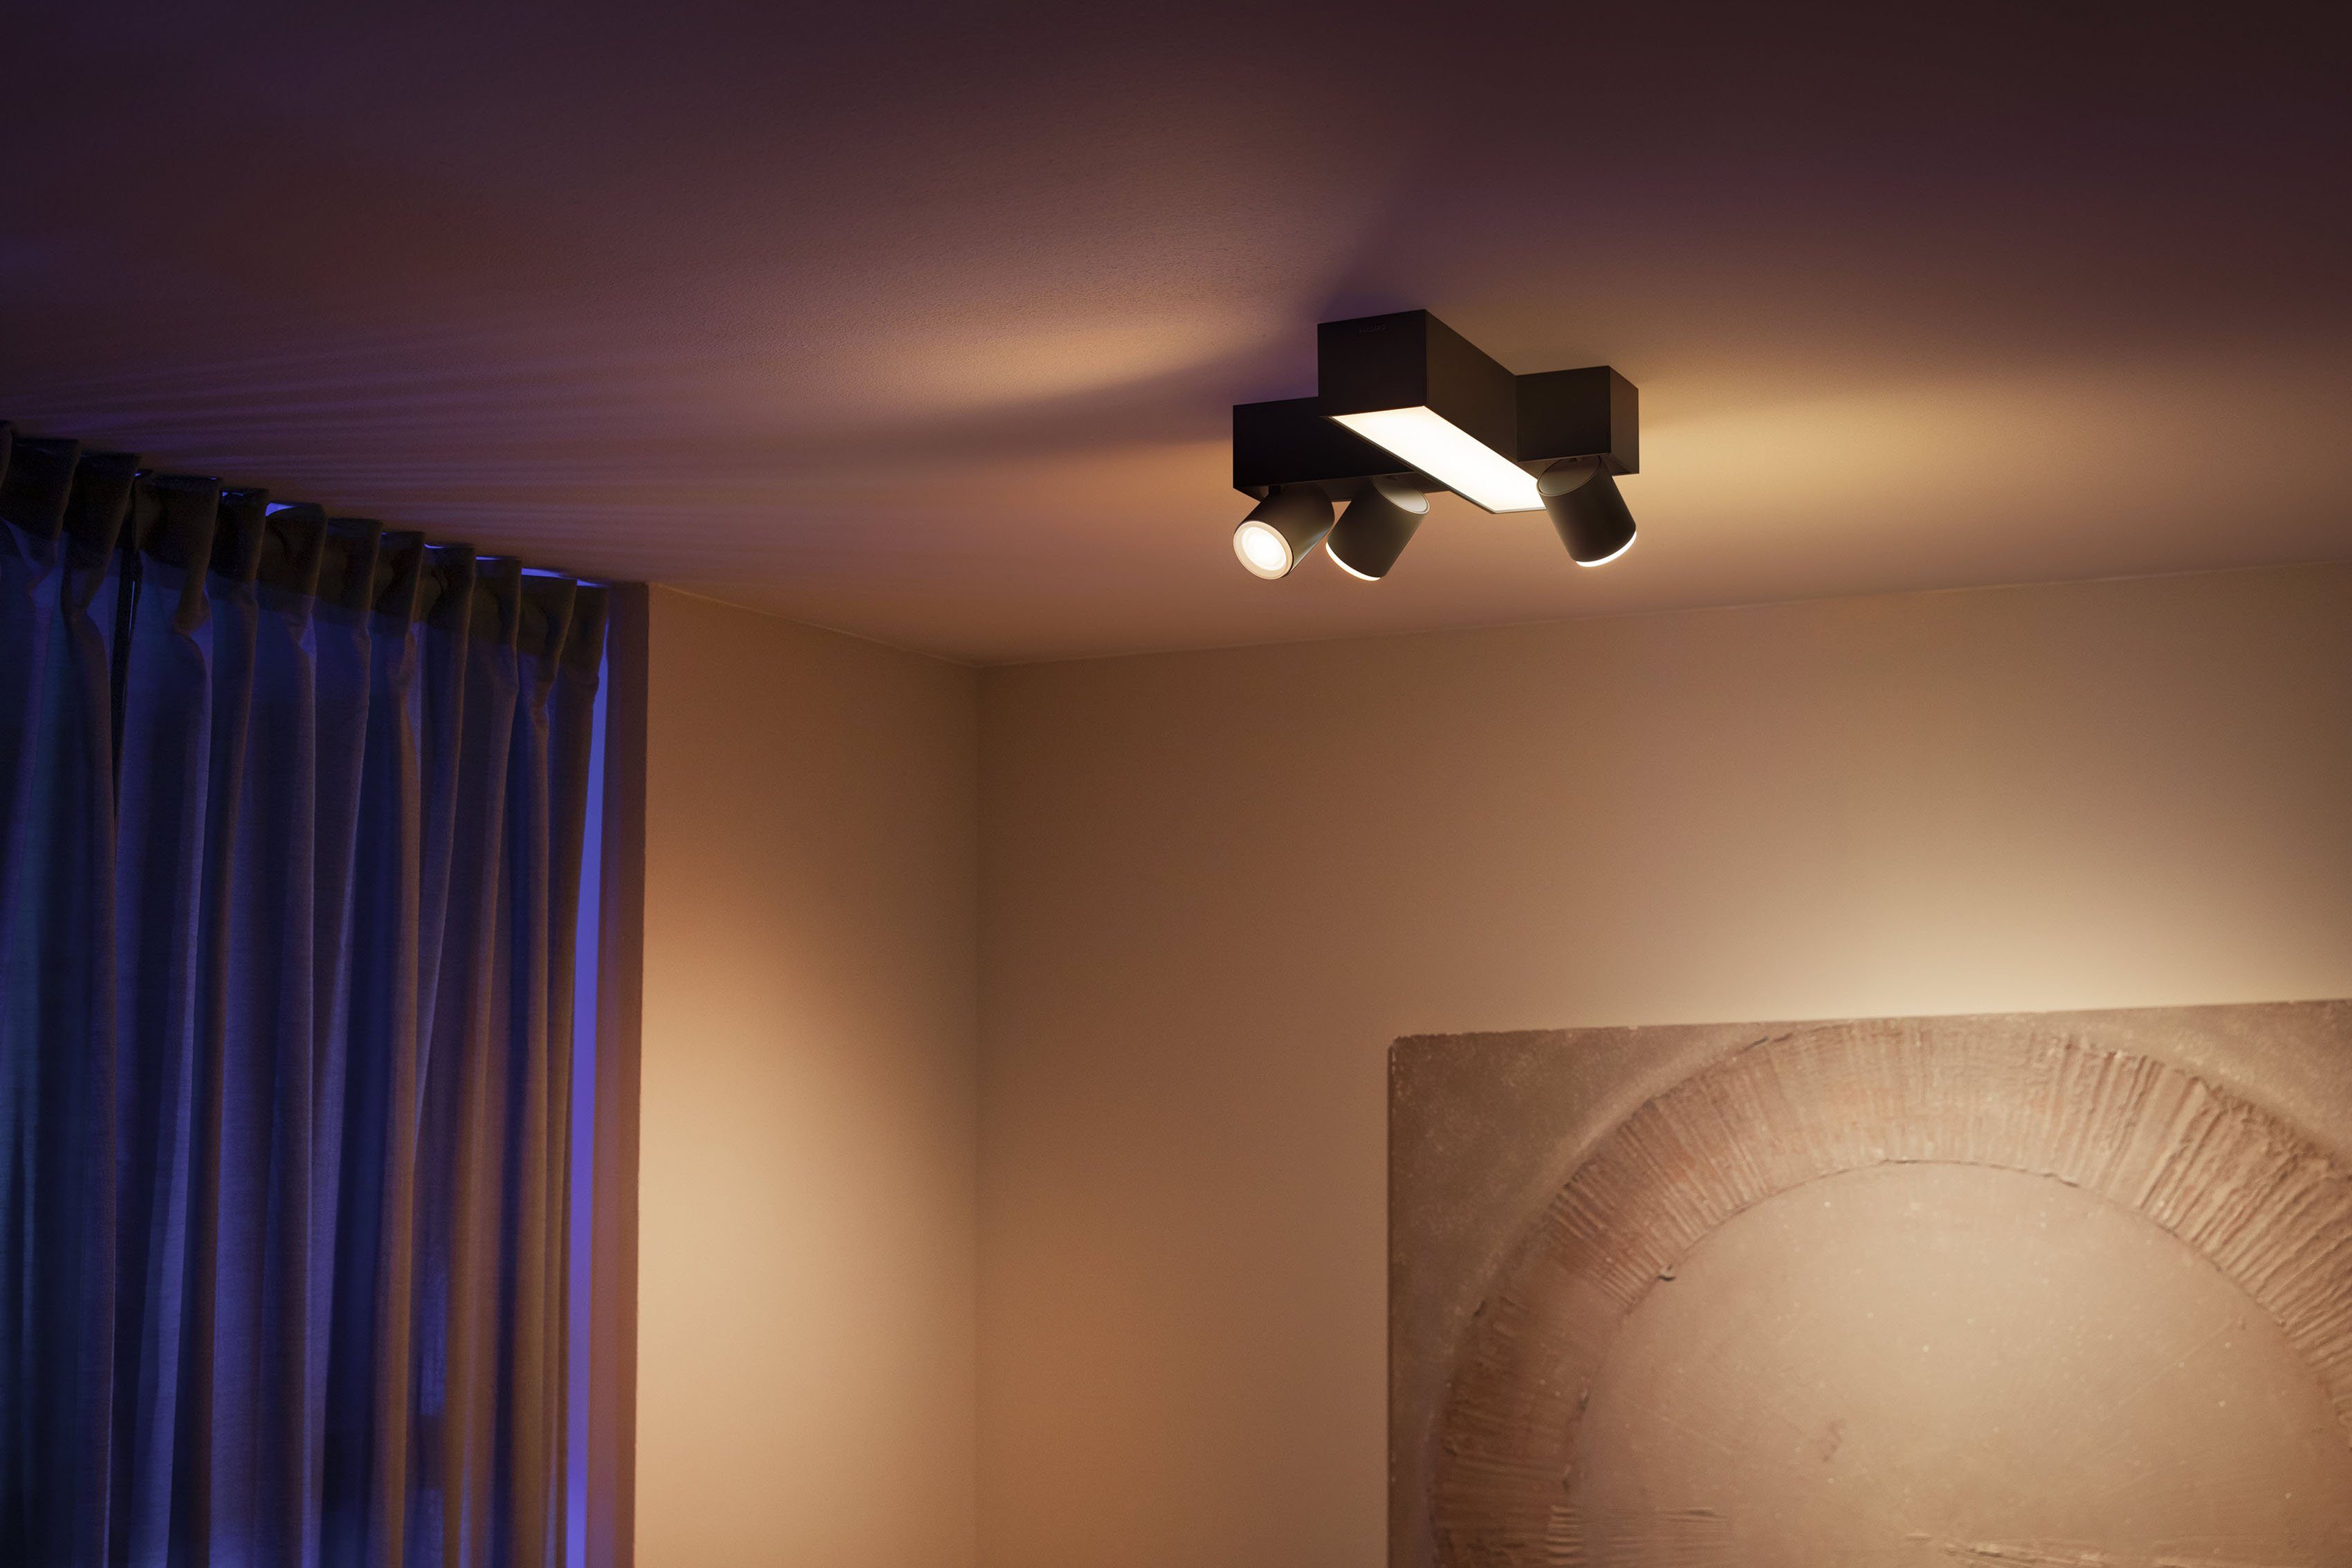 Philips Hue LED Individ. Hue Lampeneinstellungen Lampen einzeln App, der Farbwechsler, mit Deckenspot LED wechselbar, anpassbar Centris